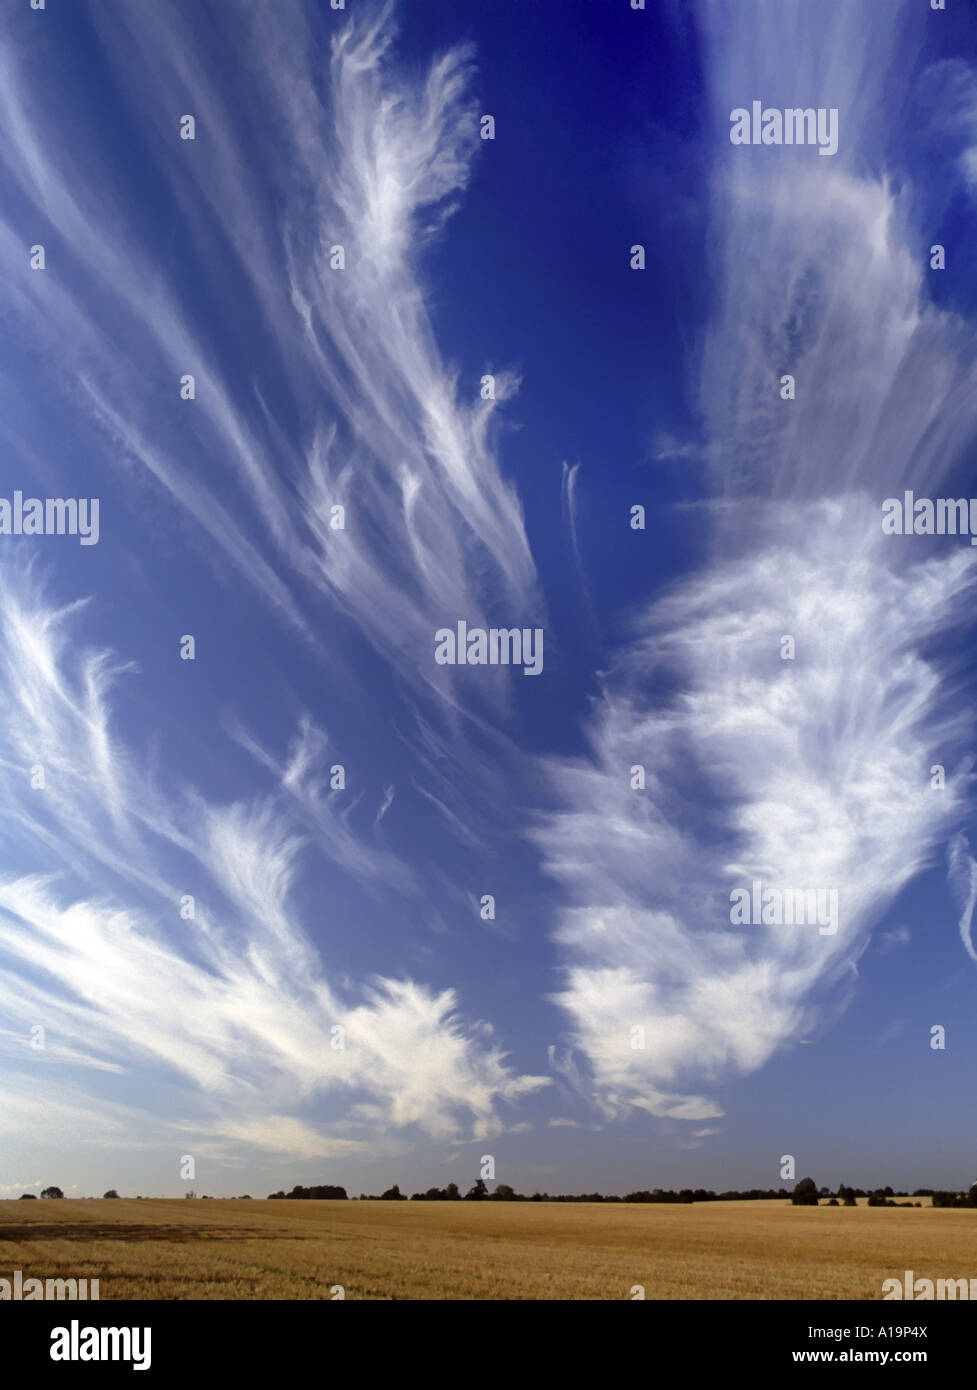 Motifs spectaculaires de nuages Cirrus sur le ciel bleu au-dessus du champ de la ferme de chaume Highwood Chelmsford Essex Angleterre Royaume-Uni Banque D'Images